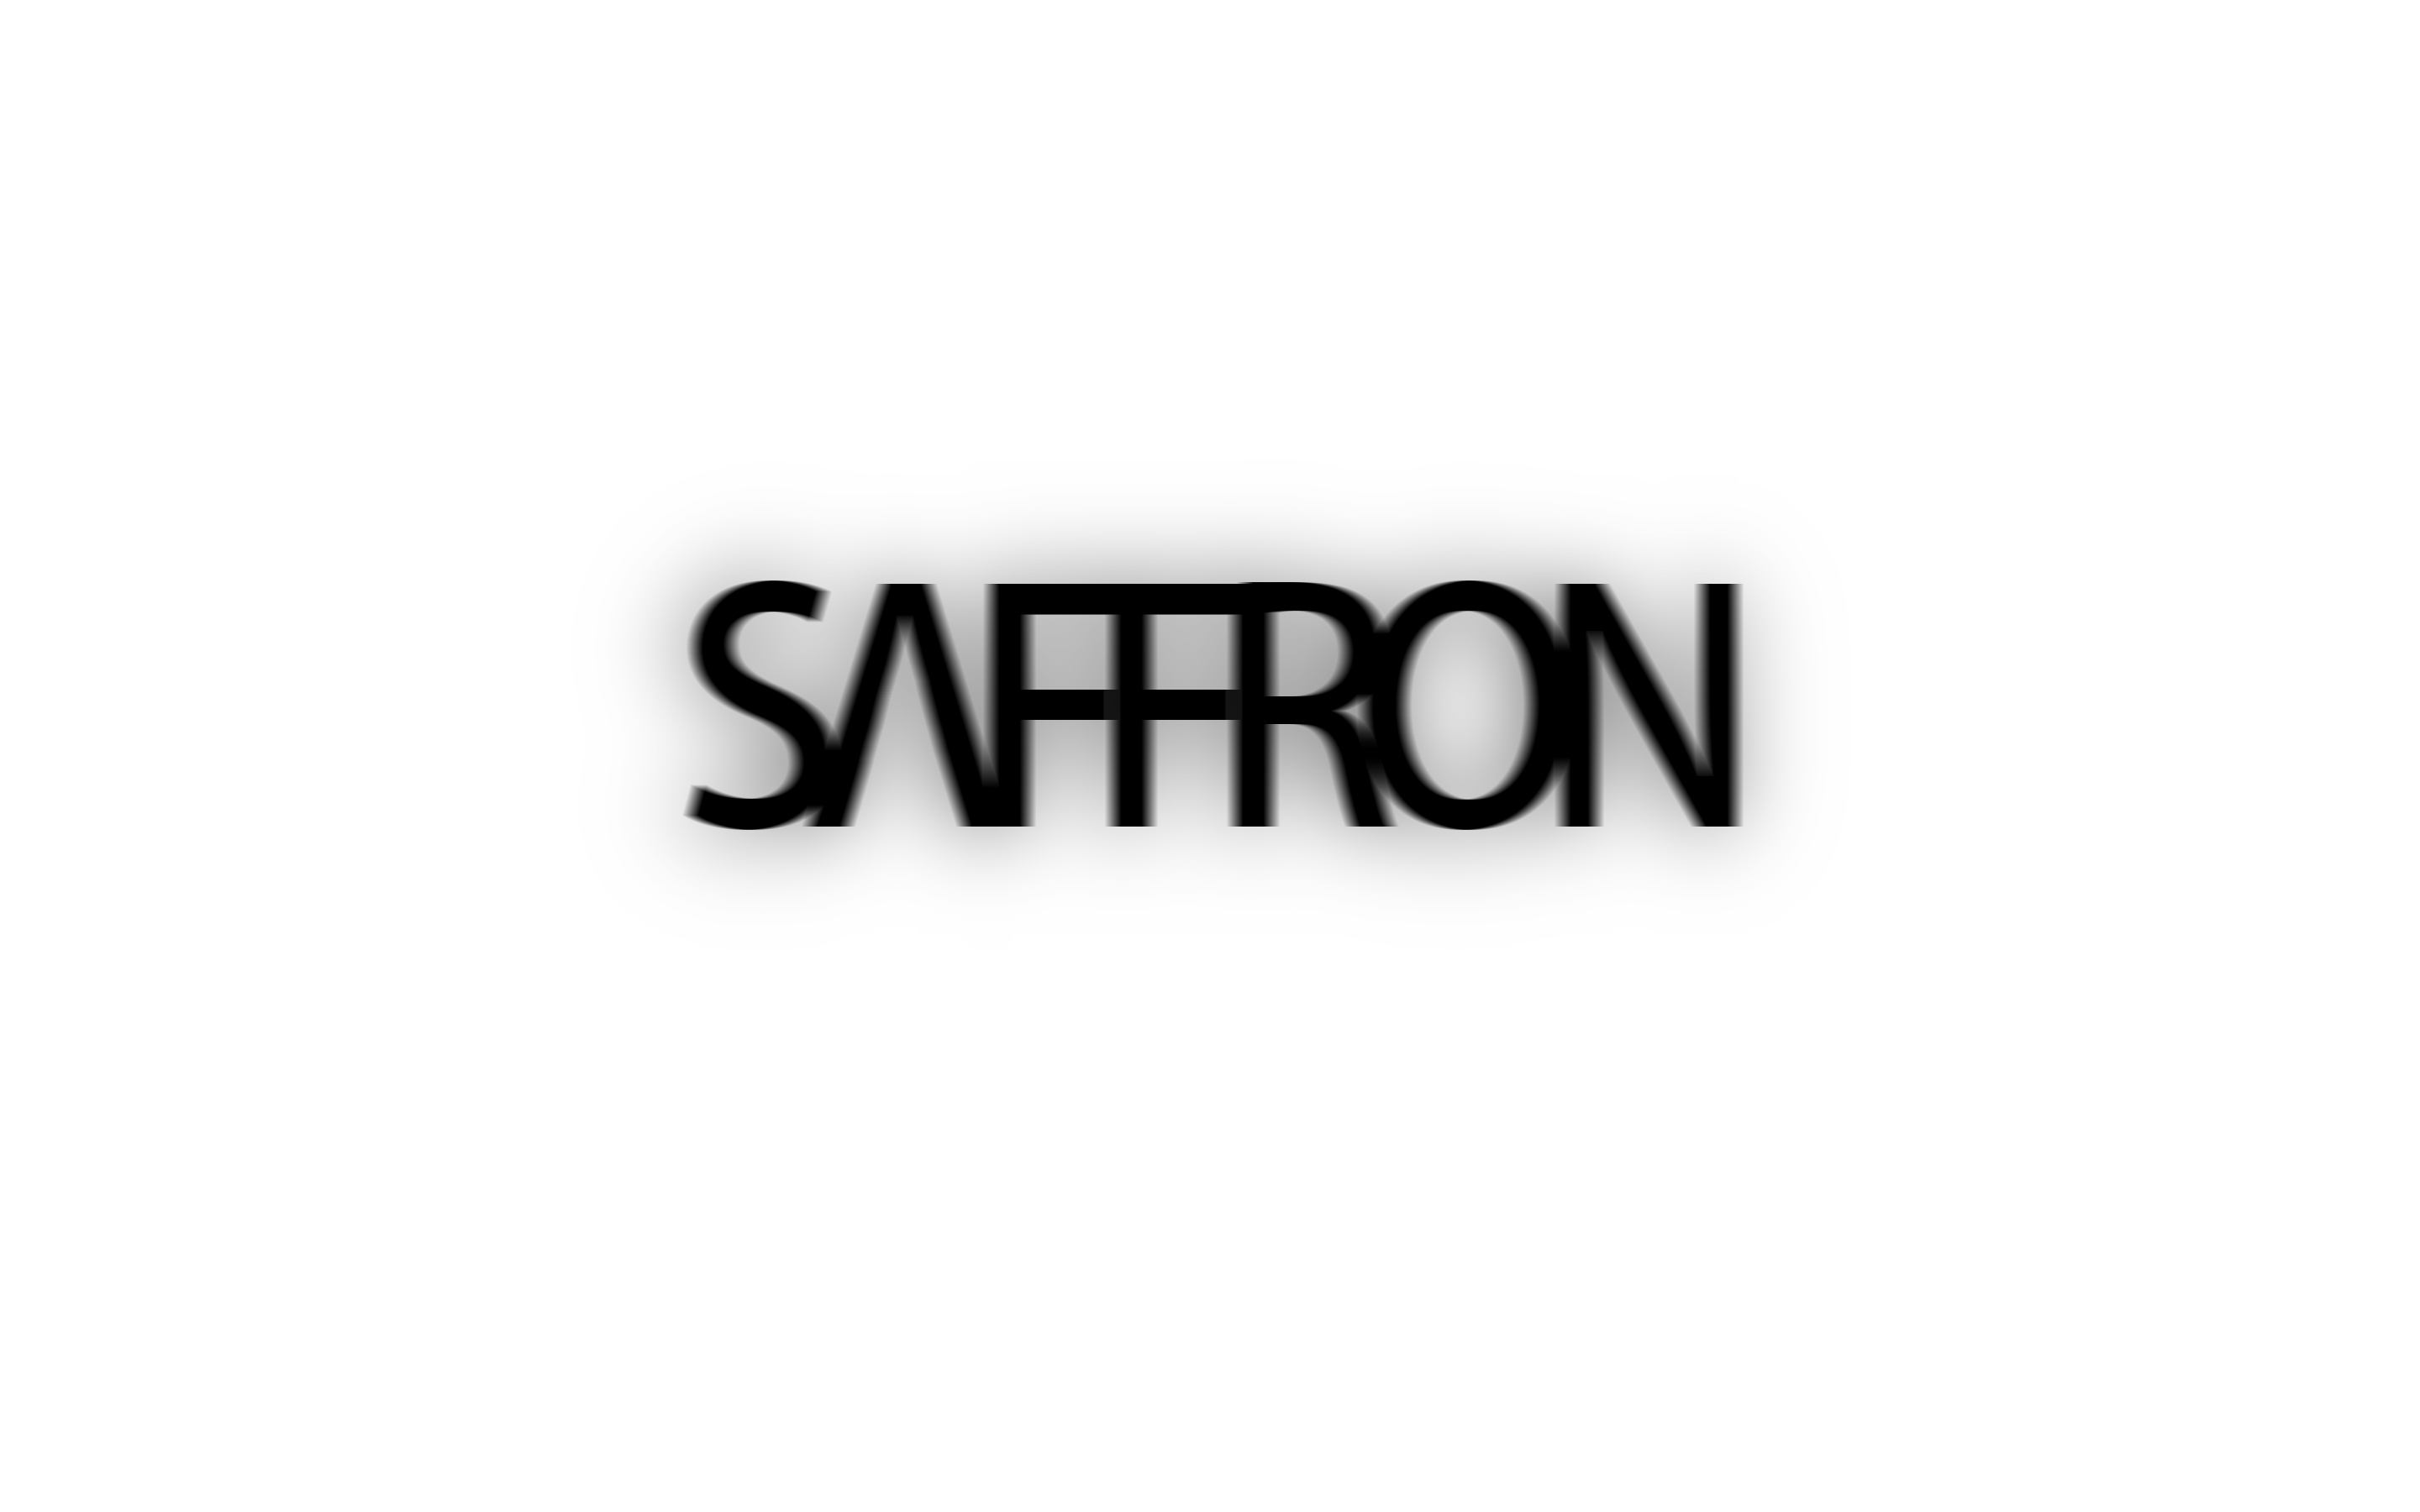 Saffron HD Wallpaper by WyattAbraham